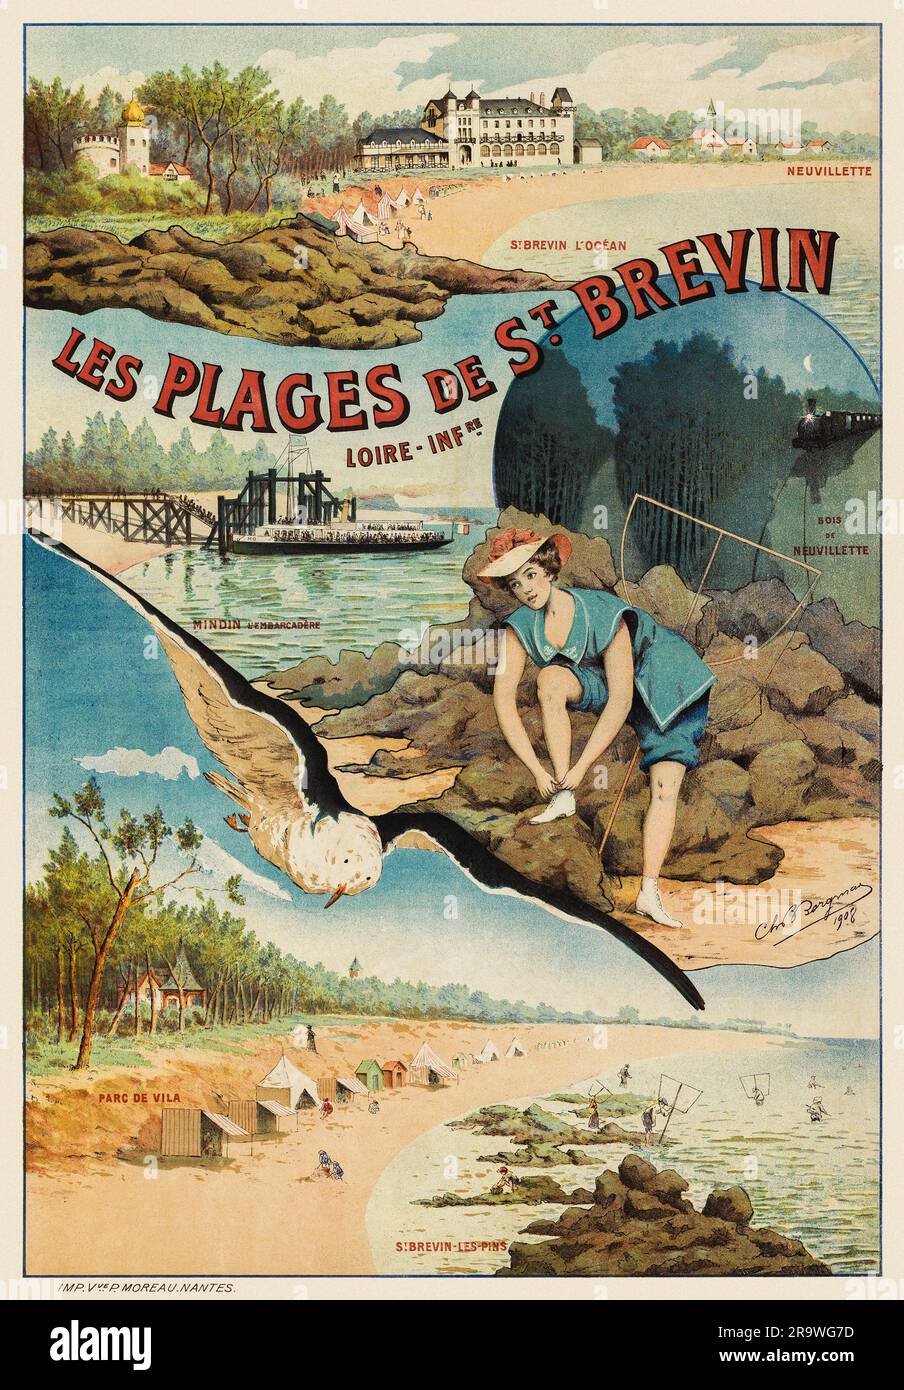 Les plages de St Brévin. Loire-Indre. Neuvillette, St Brévin l'océan, bois de Neuvillette par le CH. B. Bergman (dates inconnues). Affiche publiée en 1908 en France. Banque D'Images